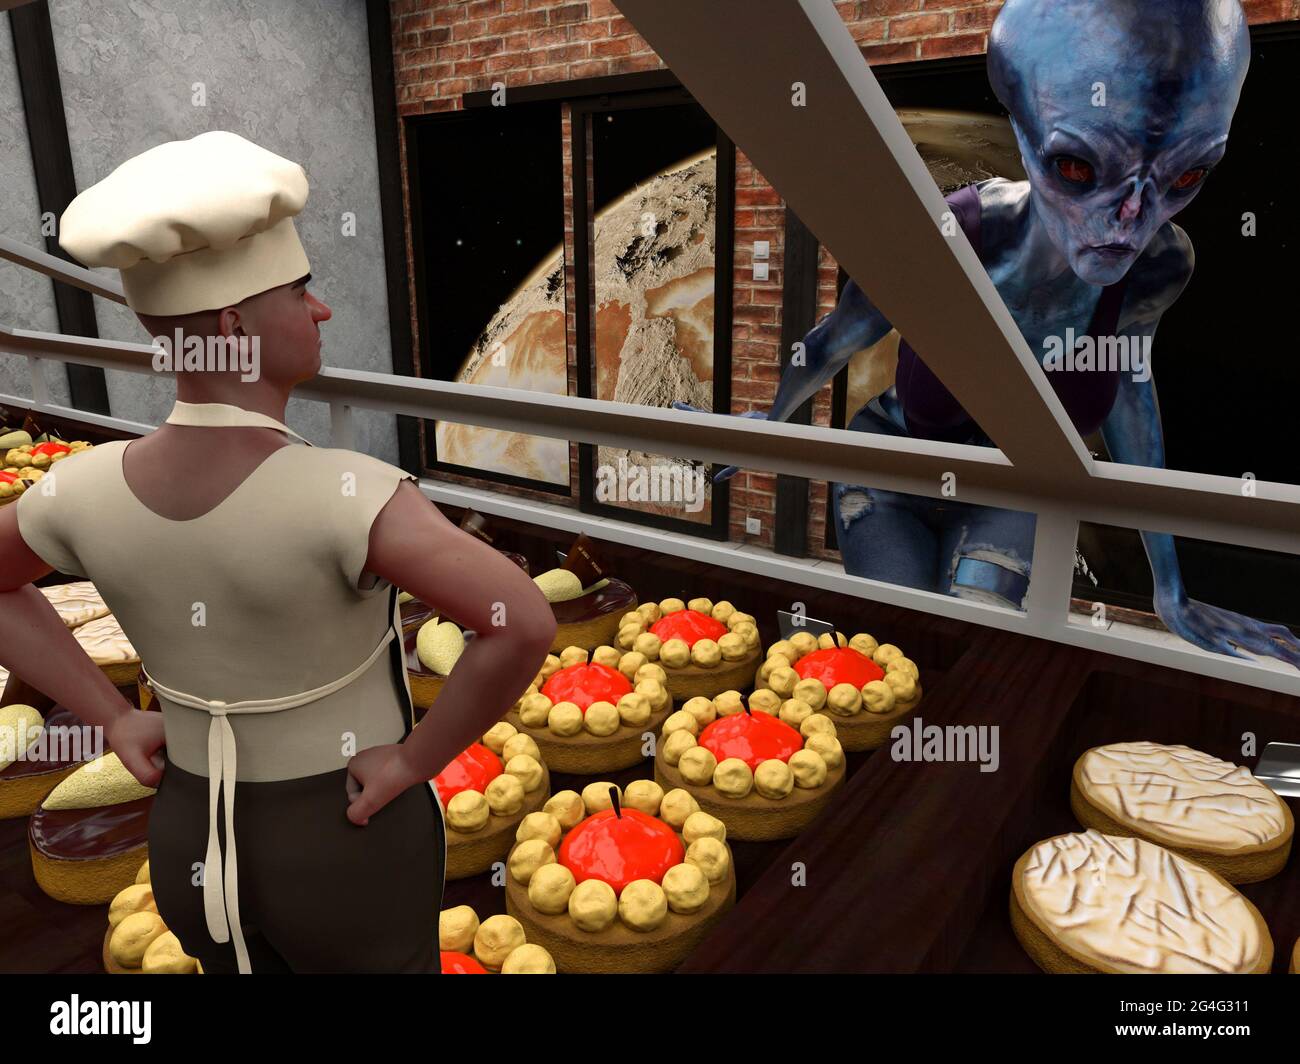 l'illustration 3d d'une énorme peau bleue extraterrestre regarde une pâtisserie alors qu'un boulanger humain attend avec les mains sur les hanches dans une boulangerie. Banque D'Images